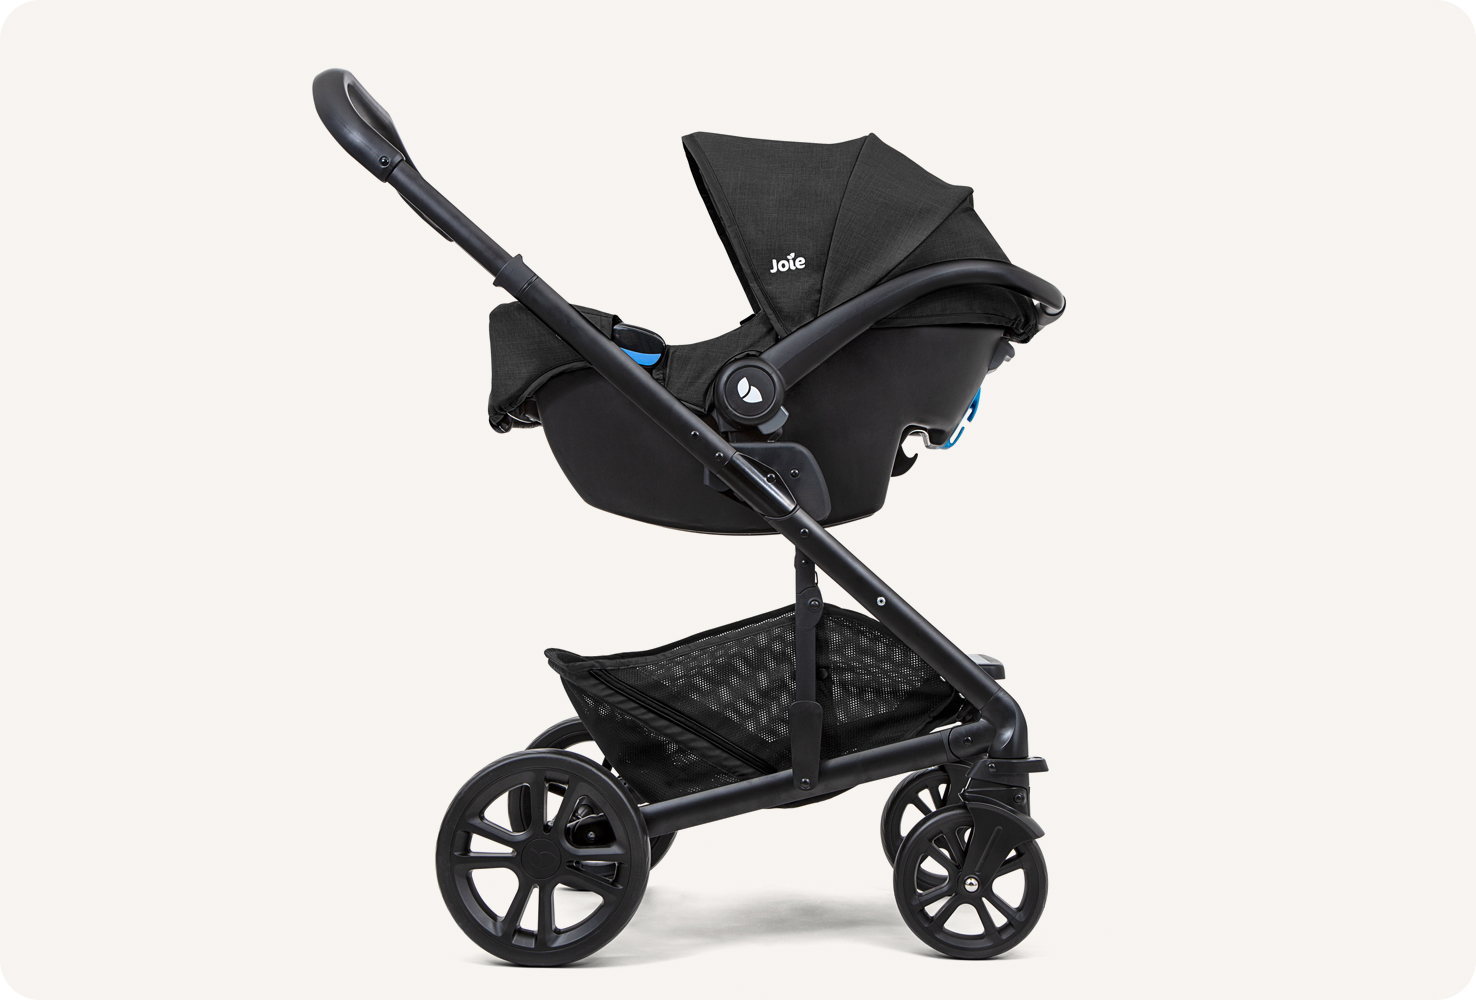 Vue en profil gauche du siège auto pour bébé Joie gemm, coloris noir, sur un socle de poussette comme système de voyage. 